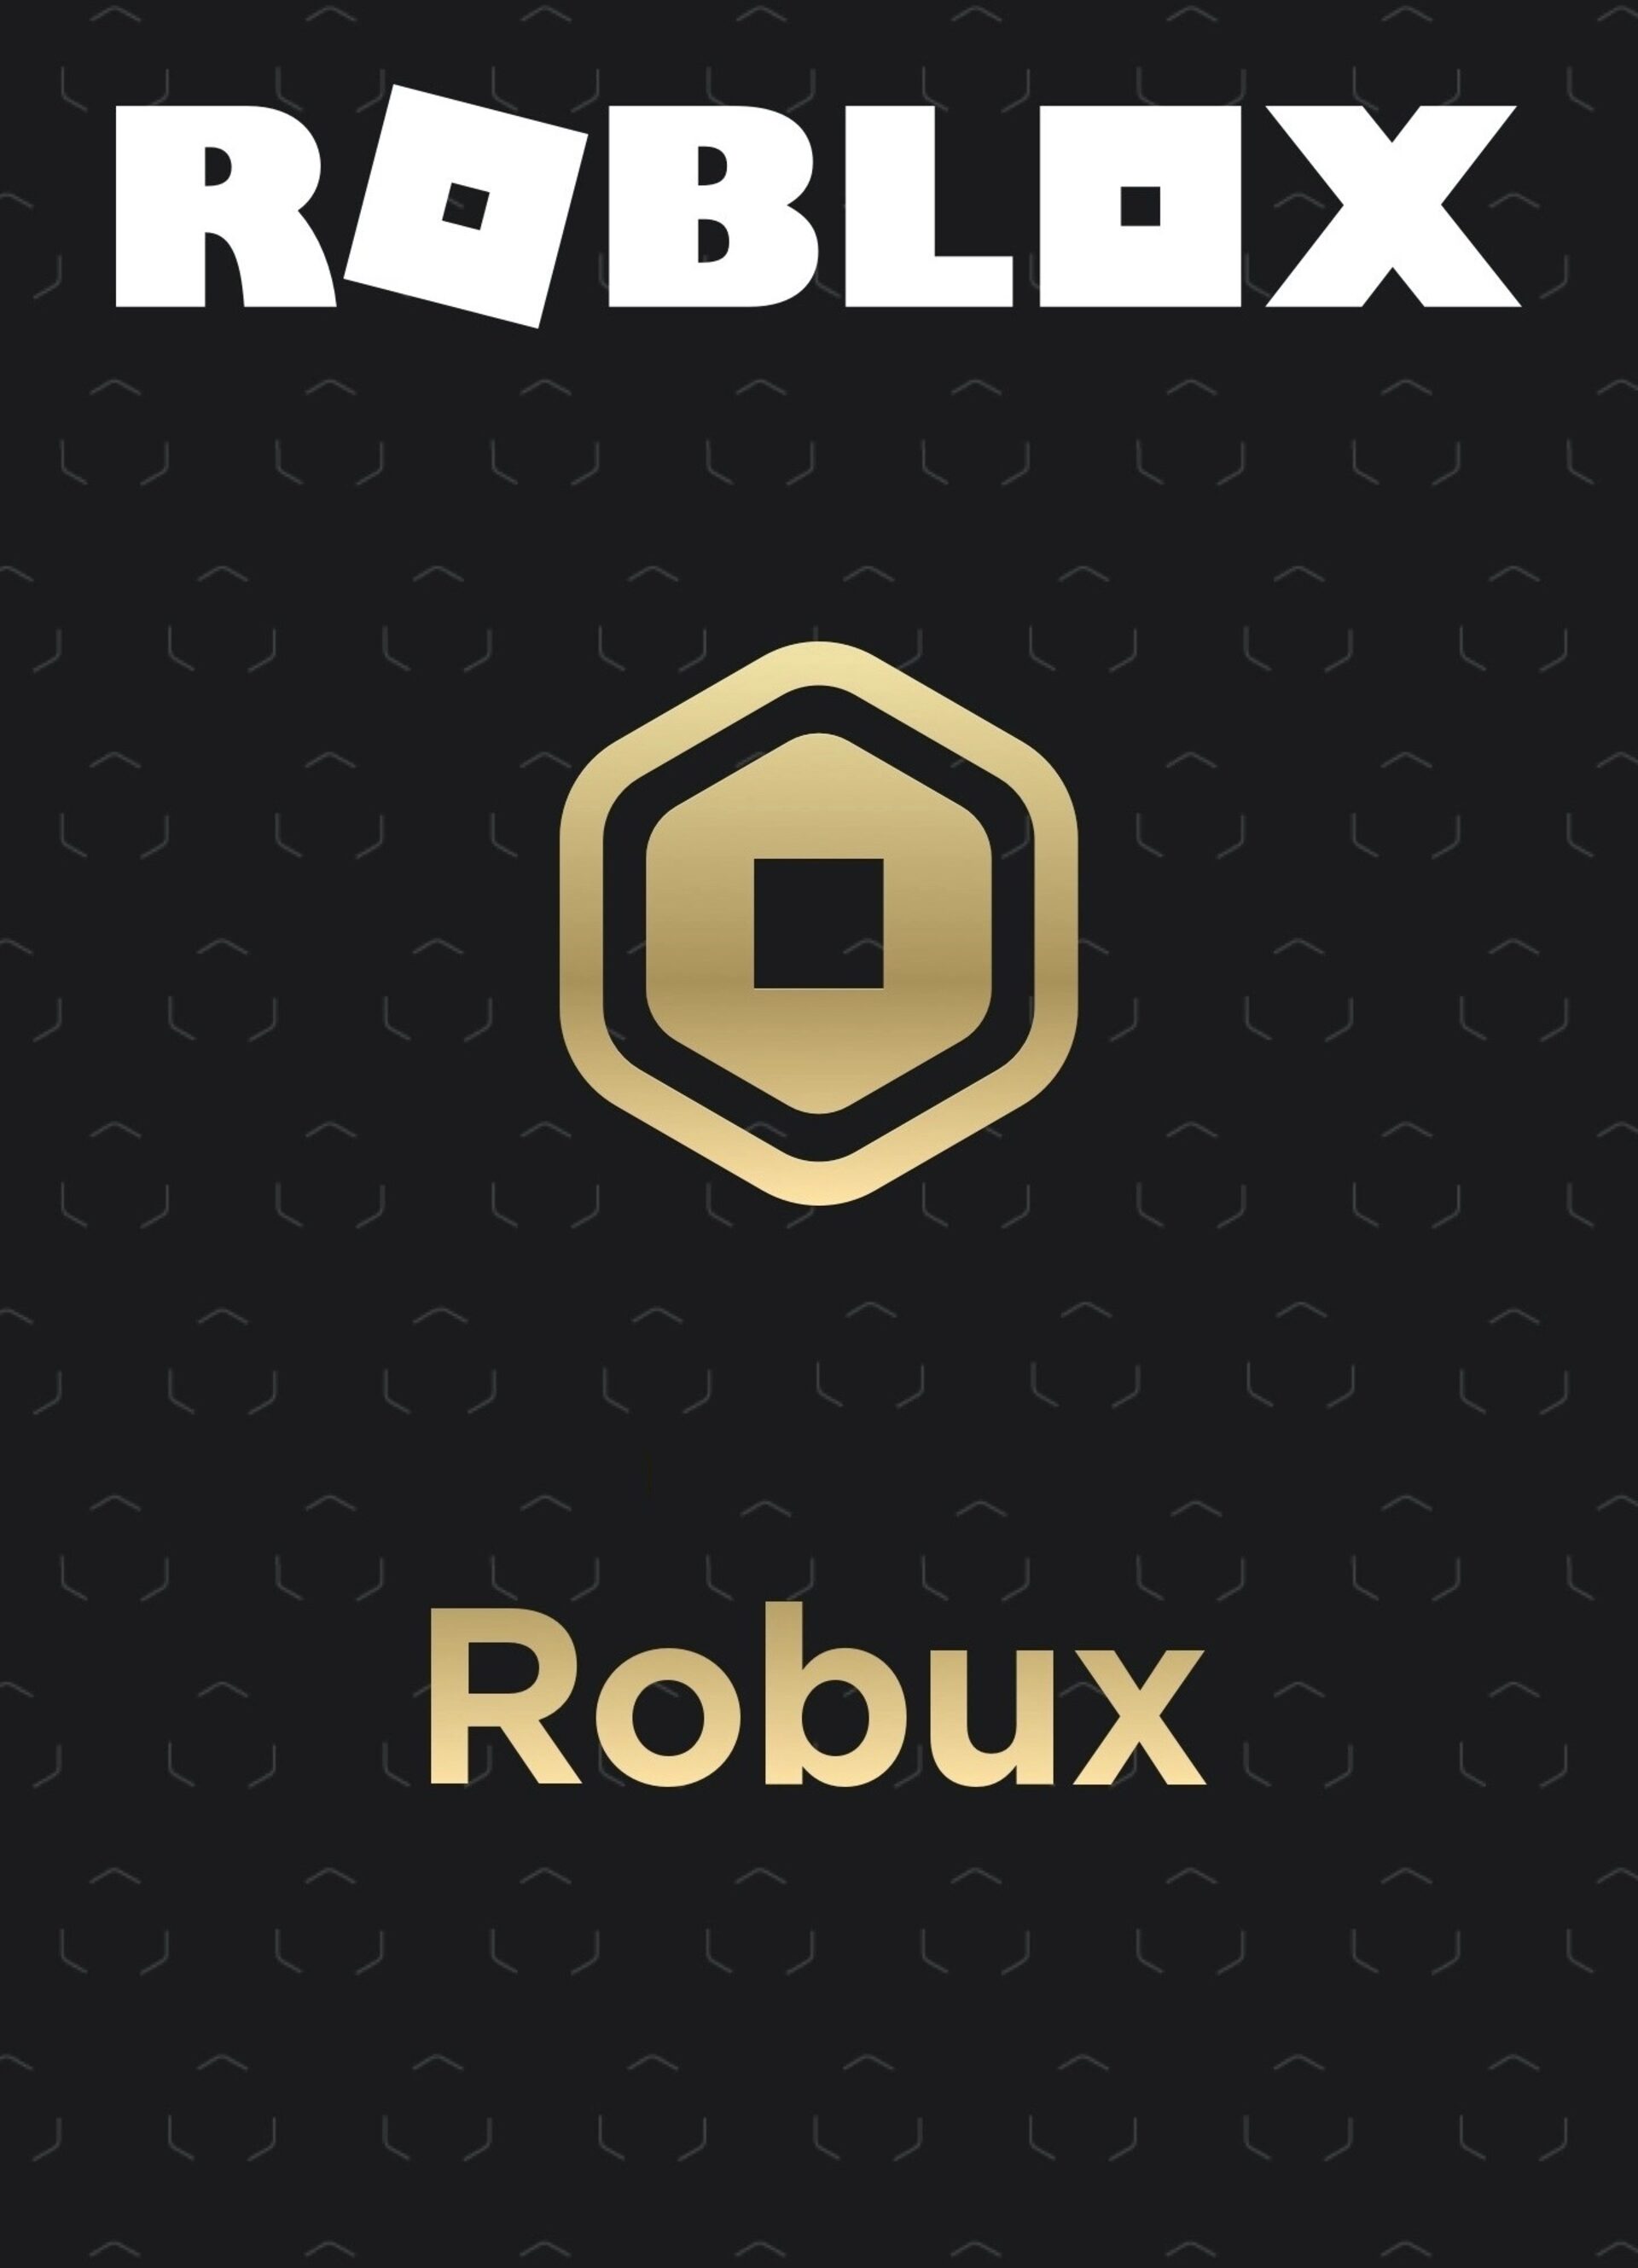 CARTÃO ROBLOX 3200 ROBUX - UP GAMES ONLINE